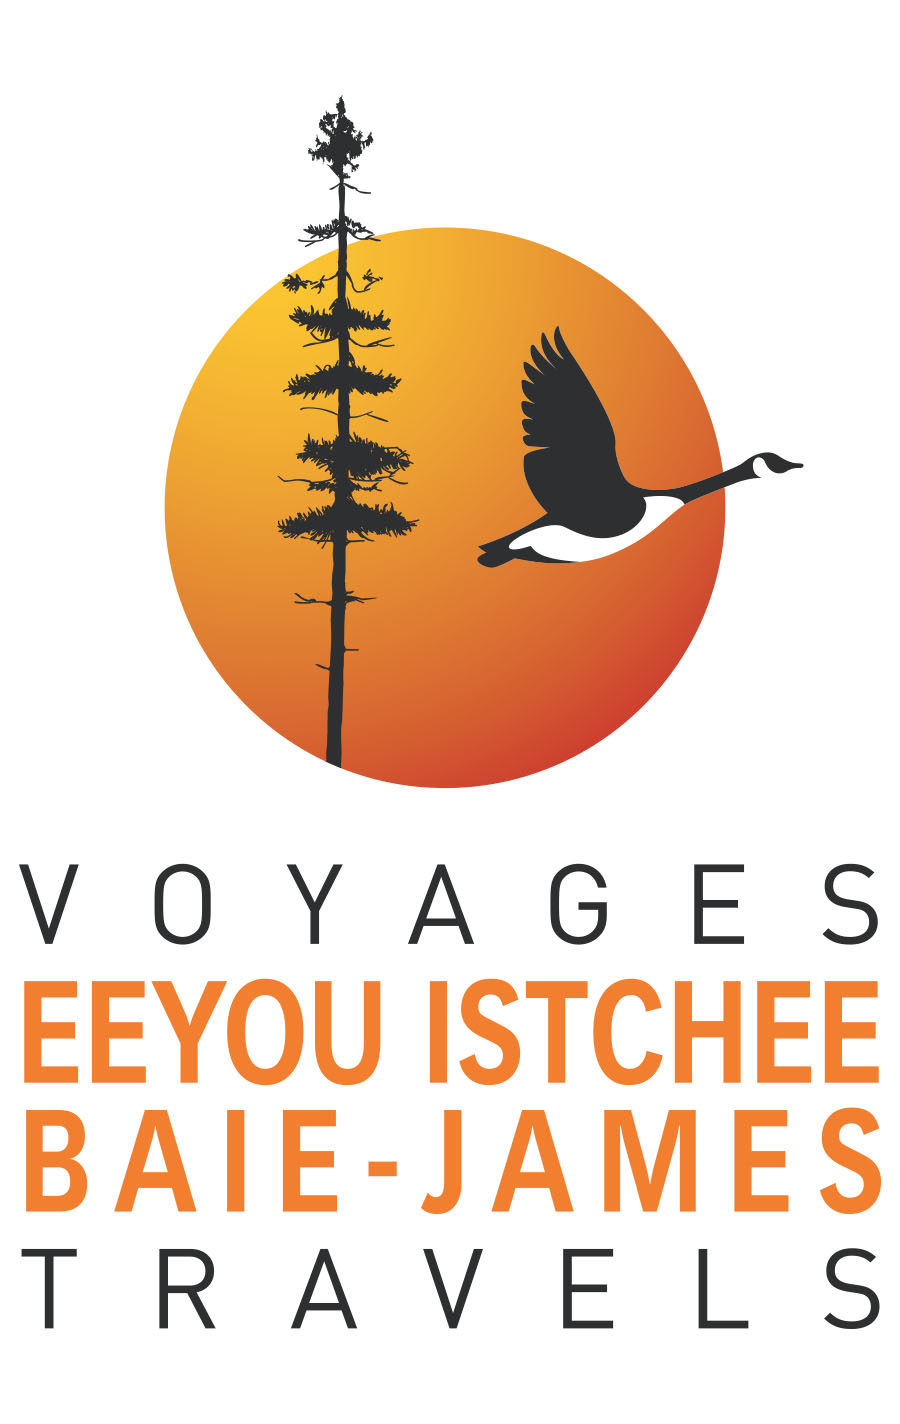 Episode 1 Chibougamau - Voyages Eeyou Istchee Baie-James Travel